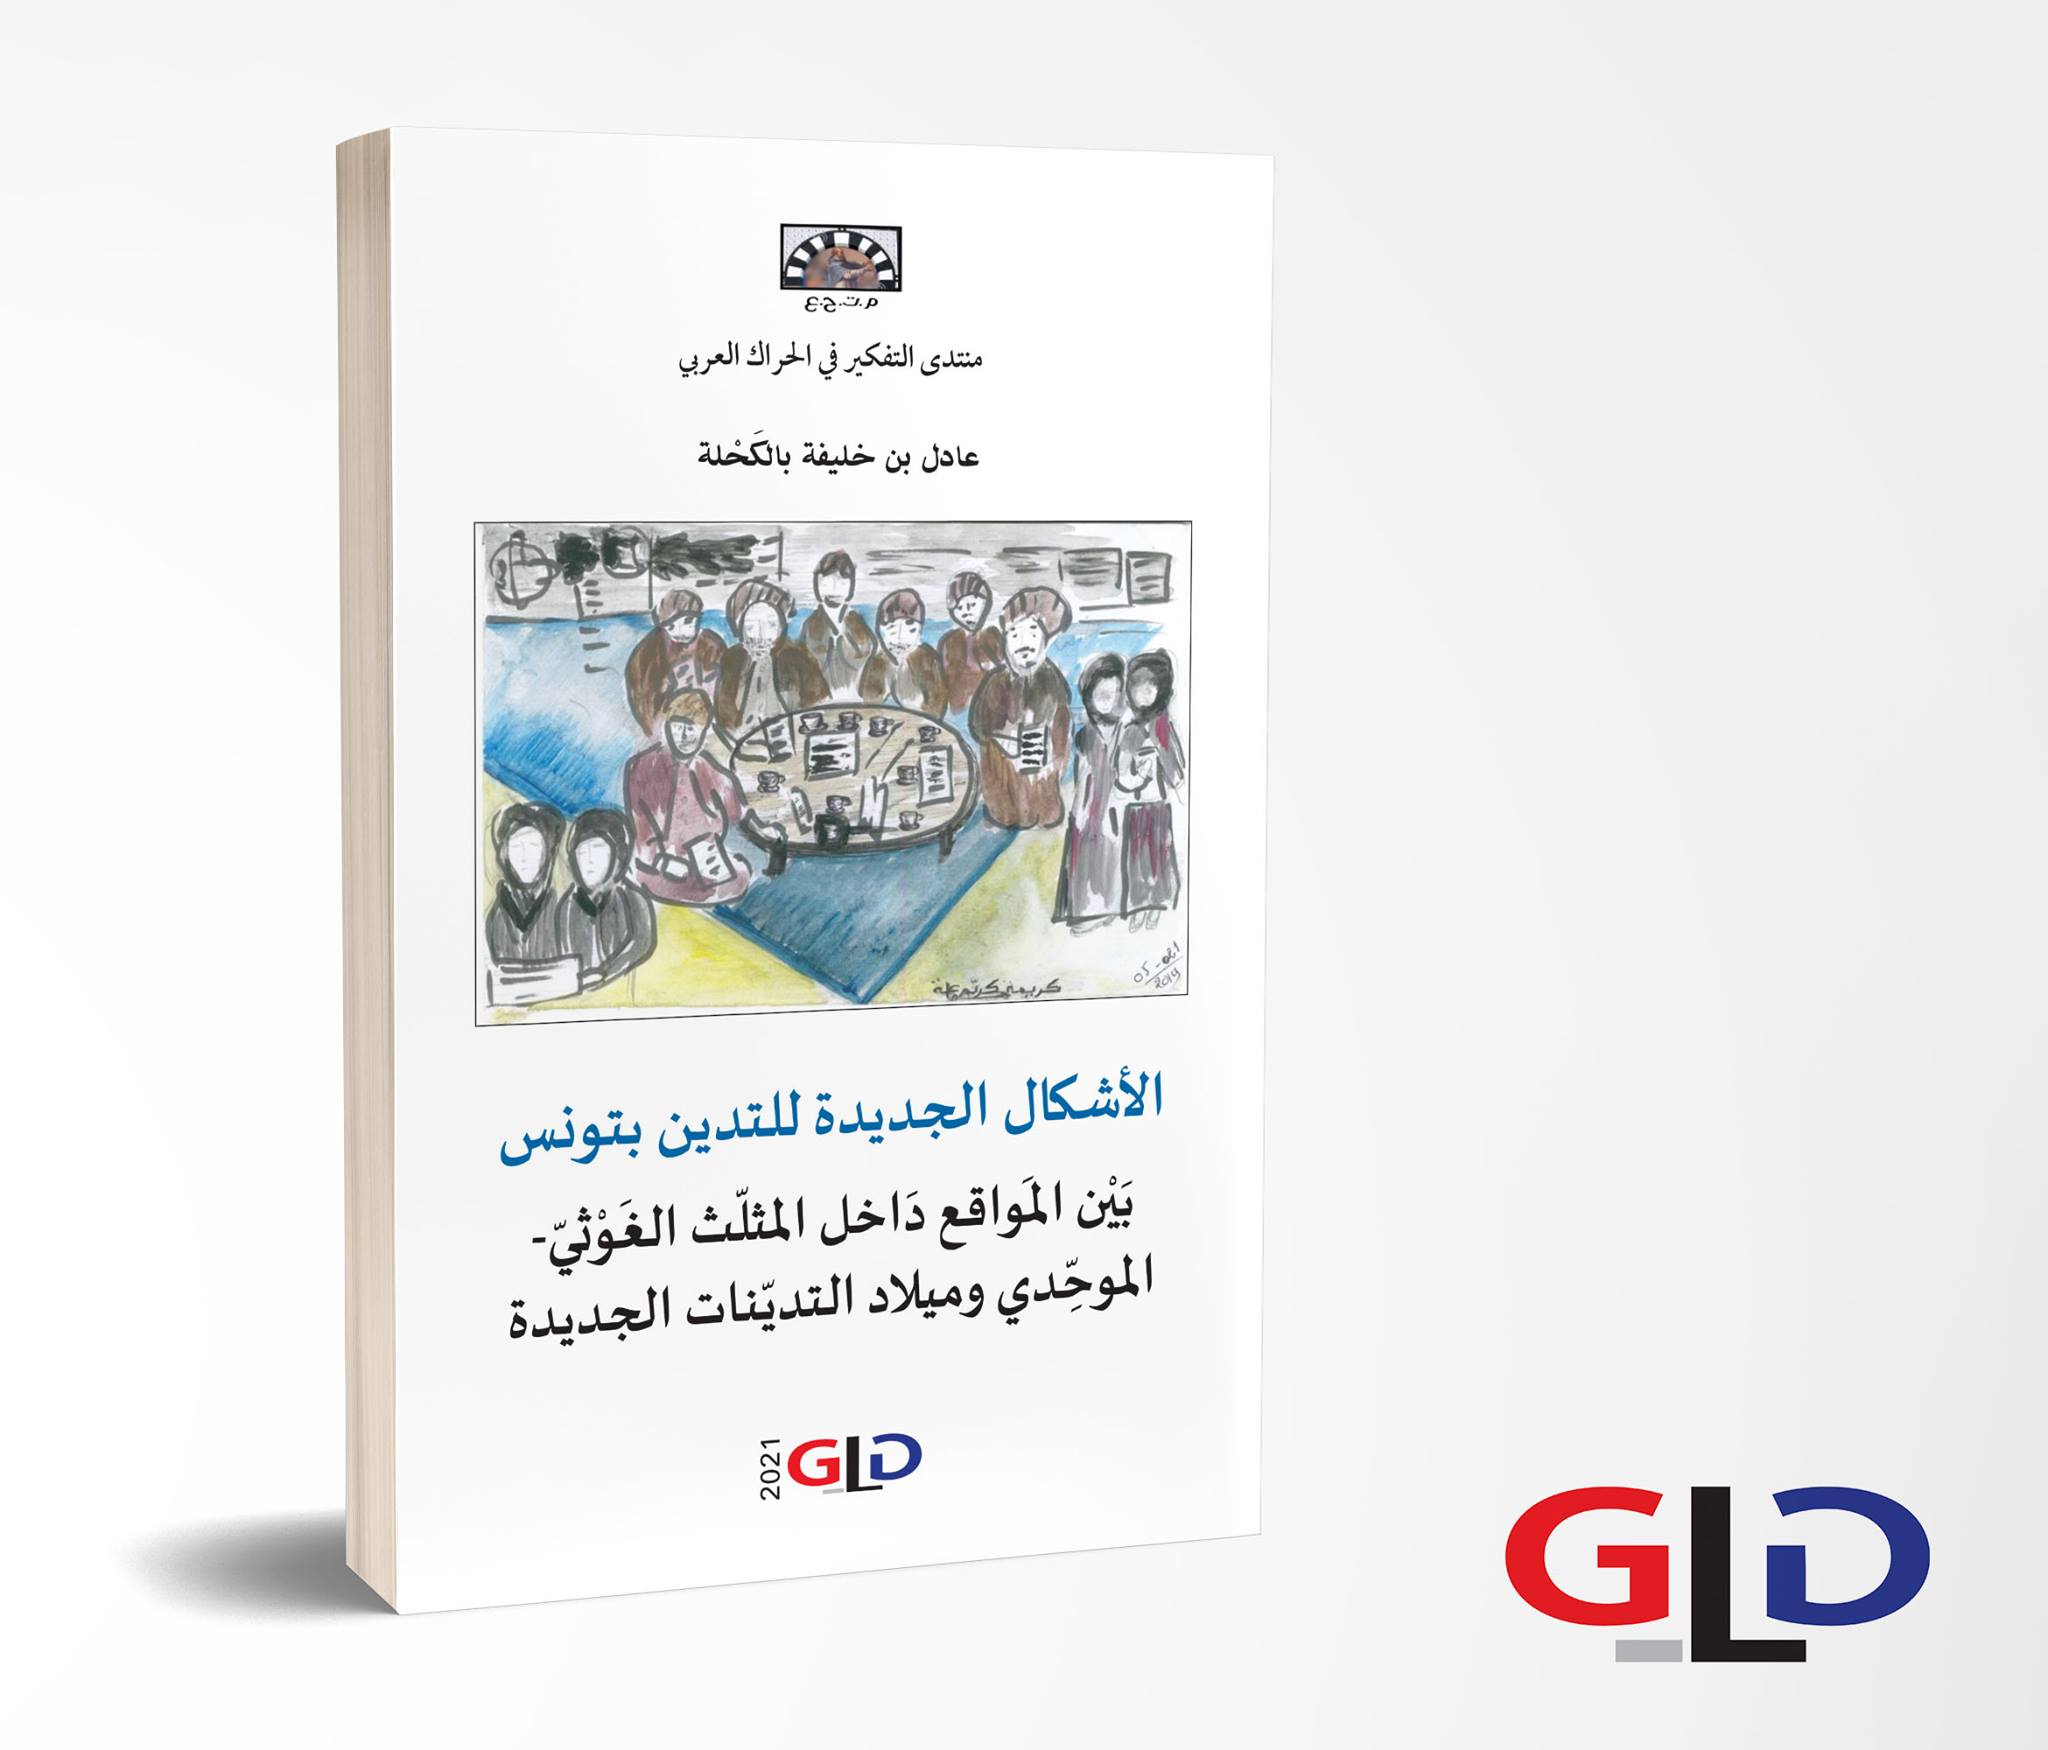 كتاب “الأشكال الجديدة للتدين بتونس” للدكتور عادل بن خليفة بالكحلة